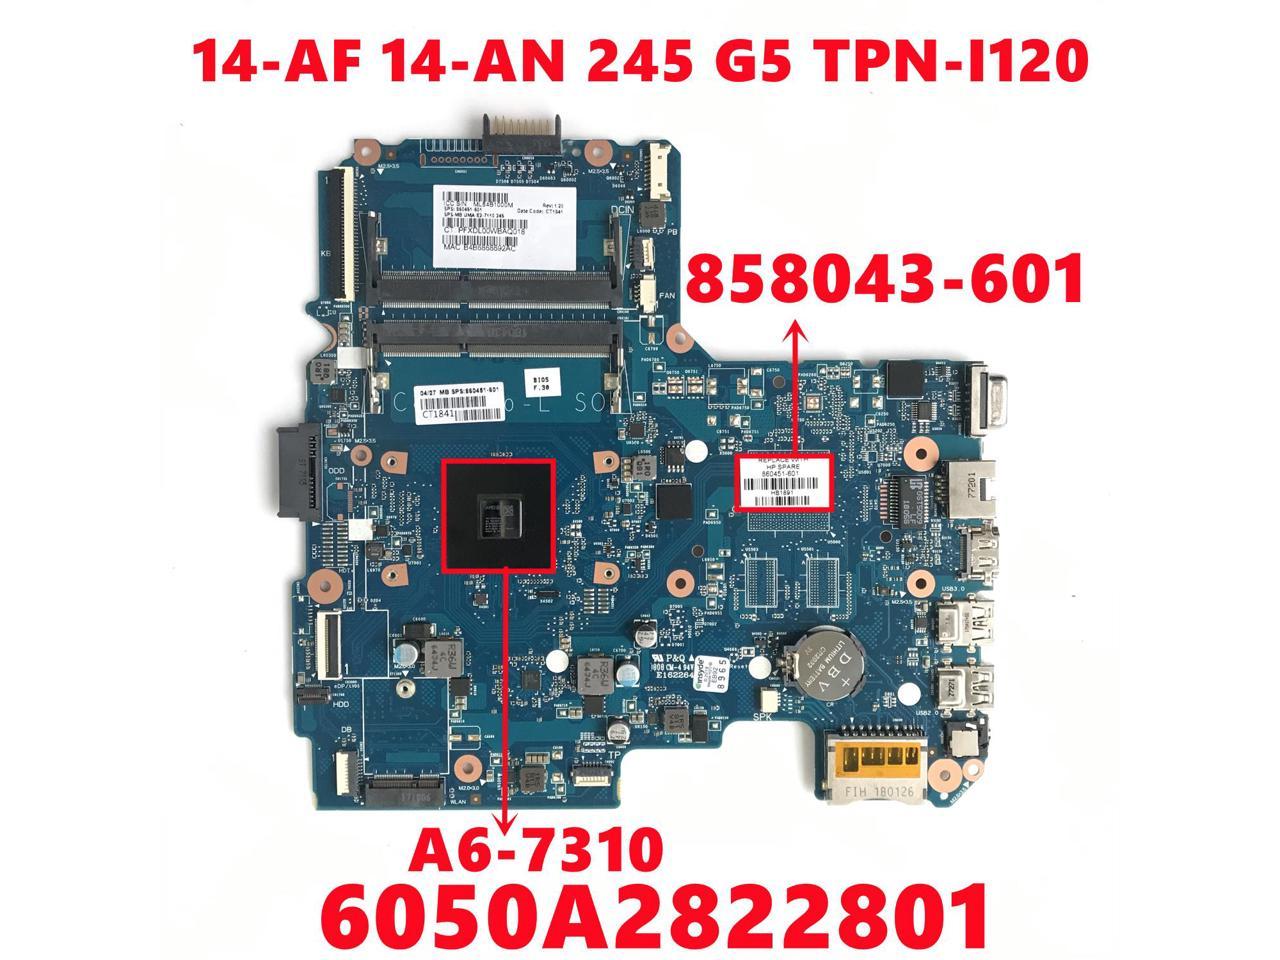 NEW for Toshiba G50 G55 LCD Inverter G71C0007Y510 HBL-0366 E-P1-50461